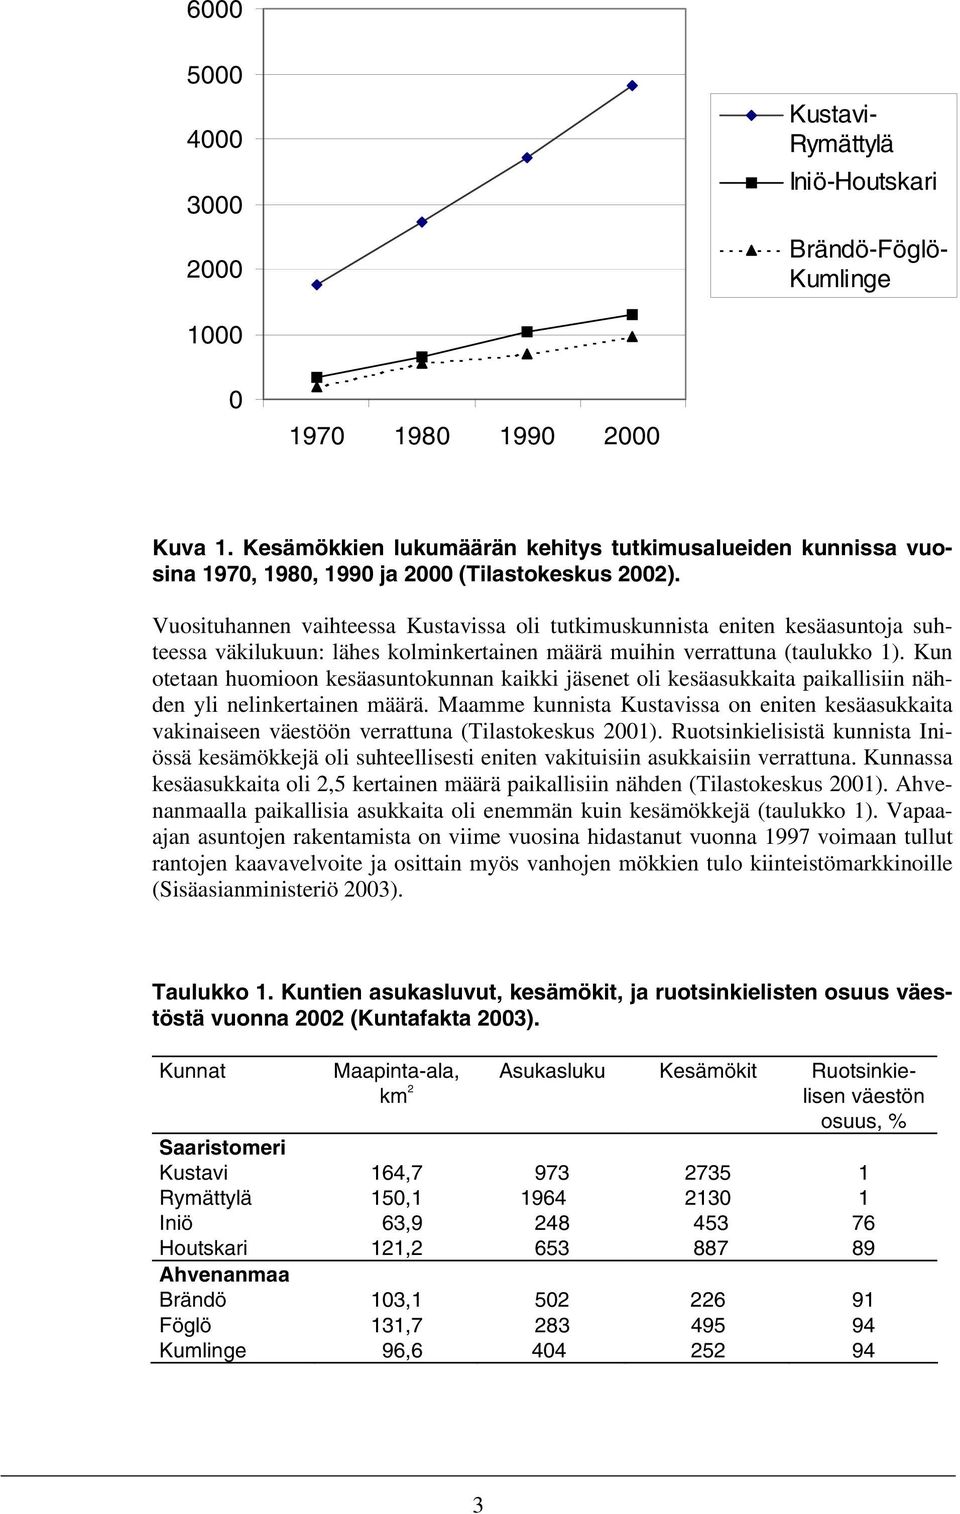 Vuosituhannen vaihteessa Kustavissa oli tutkimuskunnista eniten kesäasuntoja suhteessa väkilukuun: lähes kolminkertainen määrä muihin verrattuna (taulukko 1).